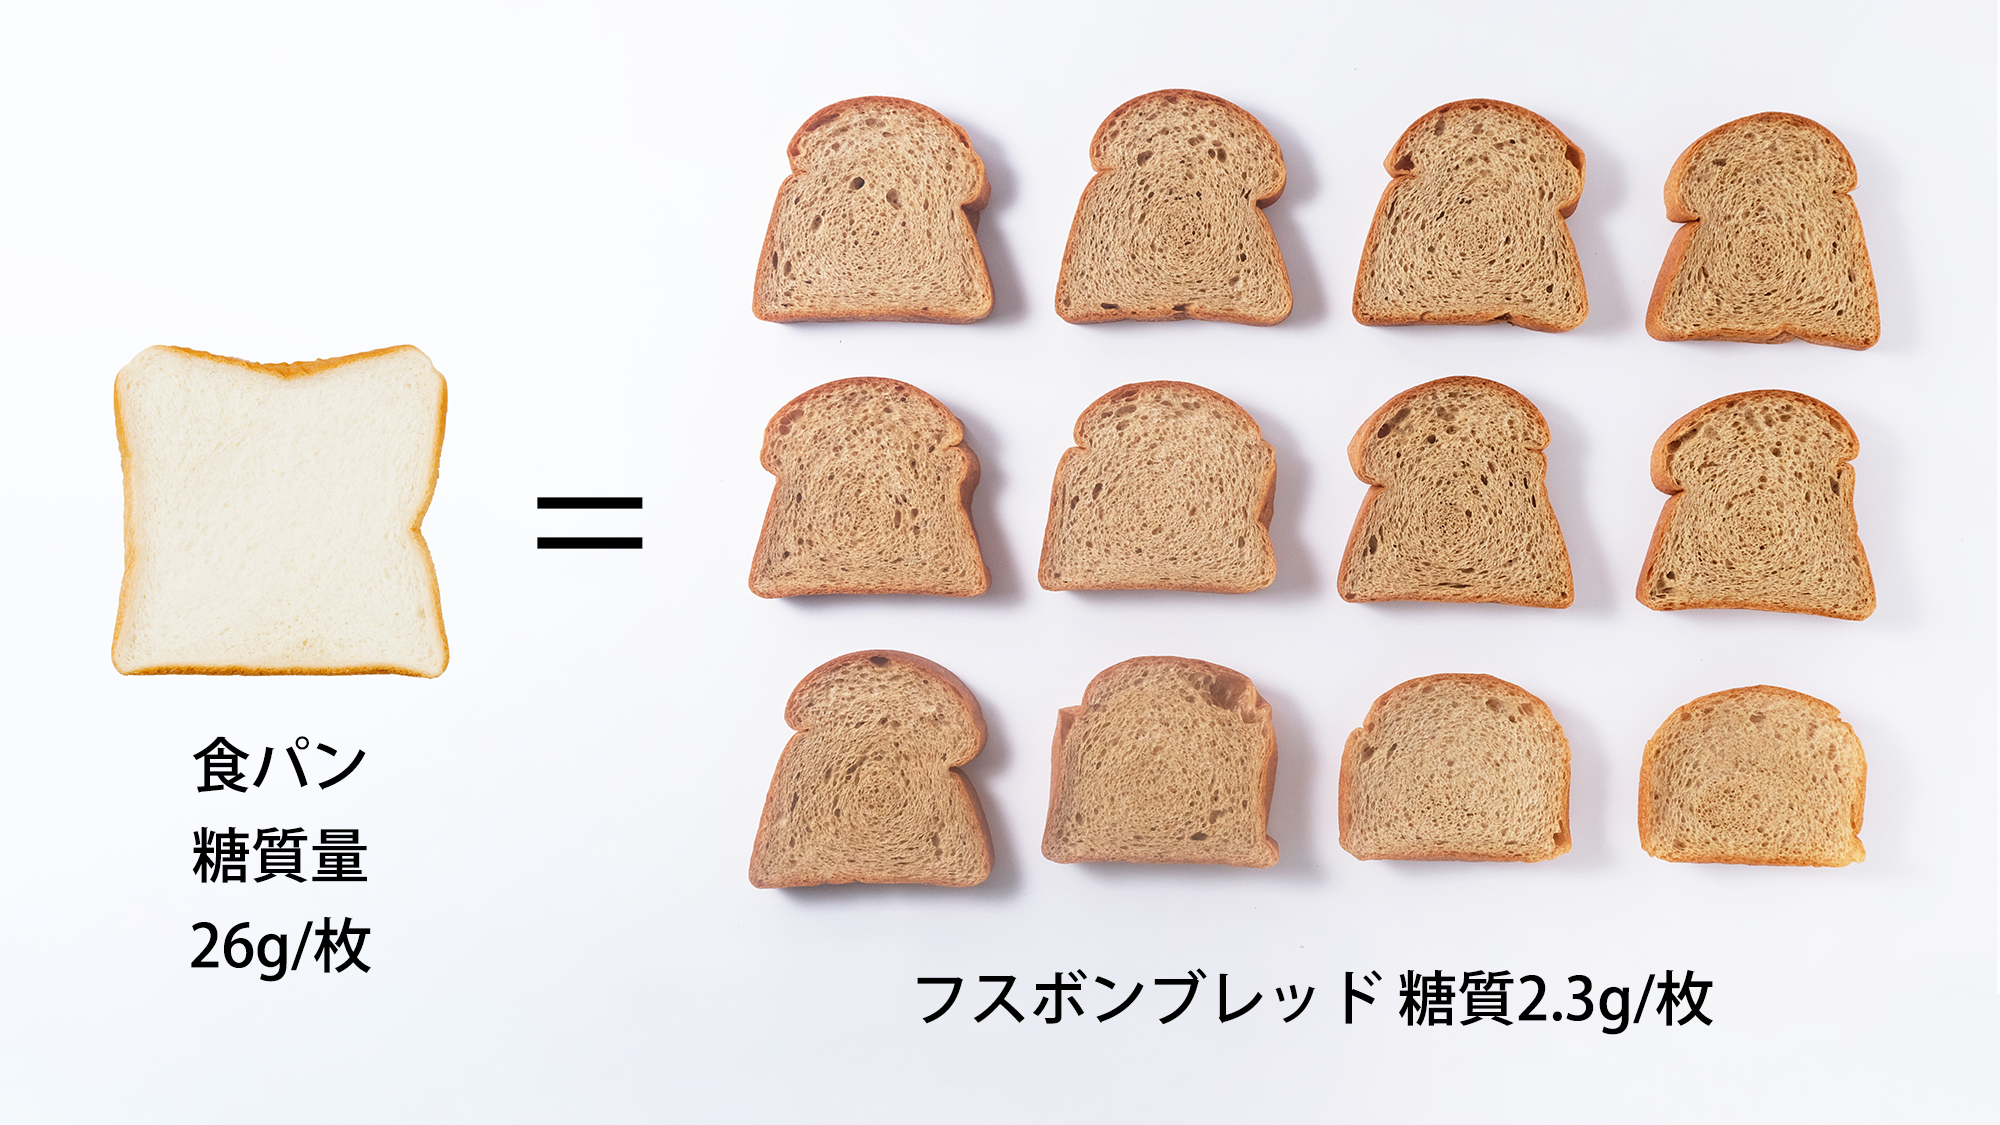 一般的な食パンとフスボンの低糖質食パンとの糖質量の比較